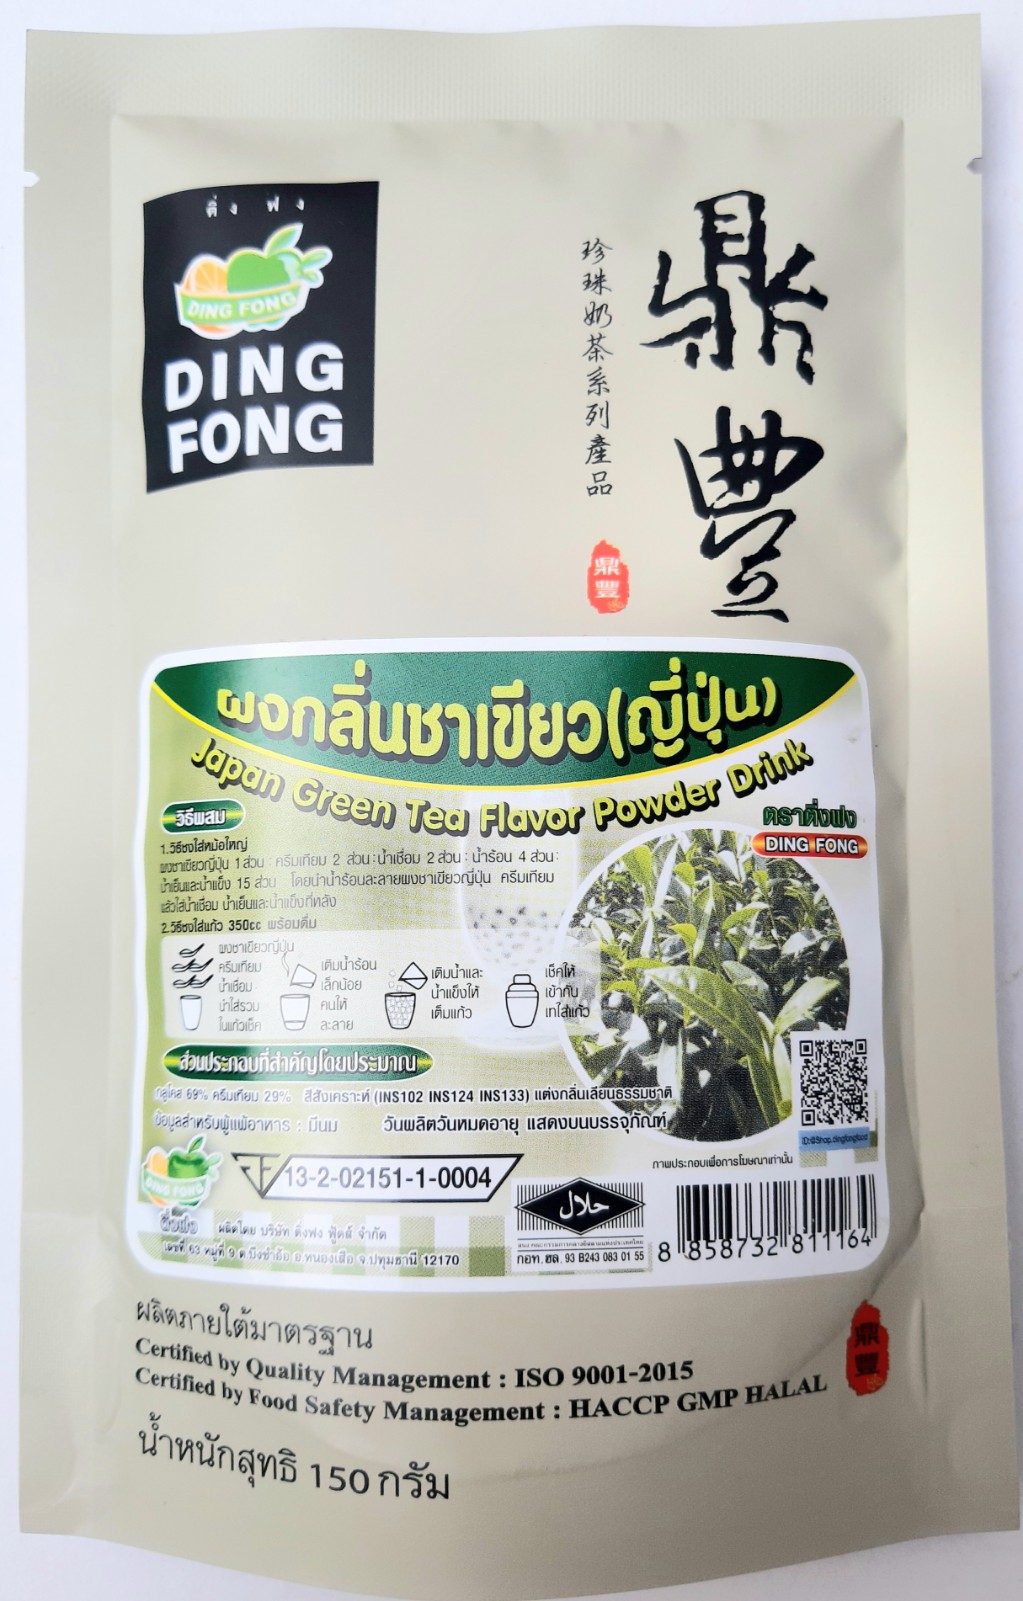 DING FONG ผงกลิ่นชาเขียว (ญี่ปุ่น) ตราติ่งฟง น้ำหนัก 150 กรัม